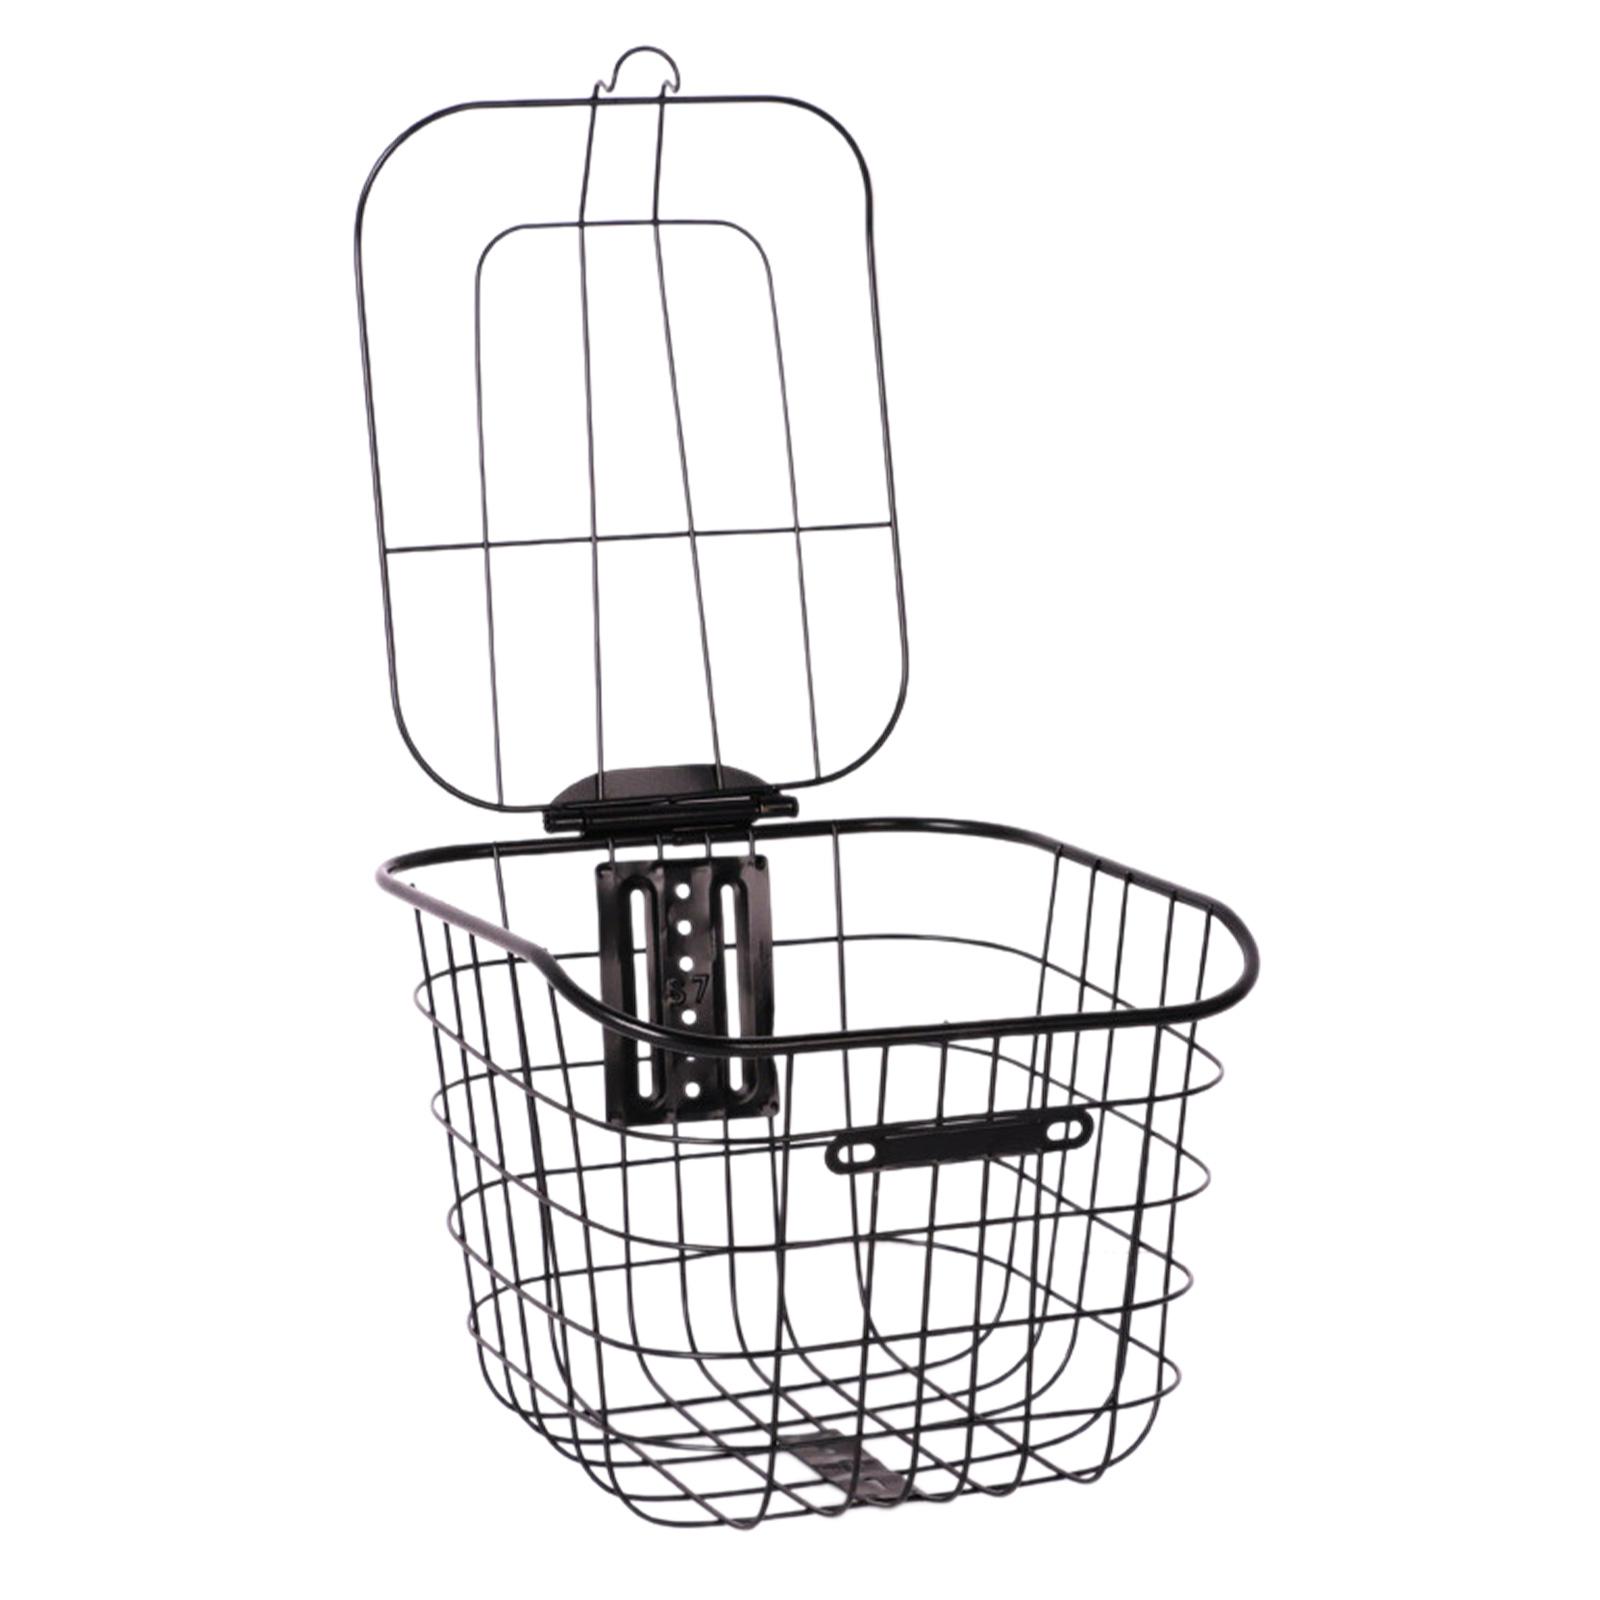 kesoto Bike Front Basket Handle Storage Basket Basket Carrier Holder ...